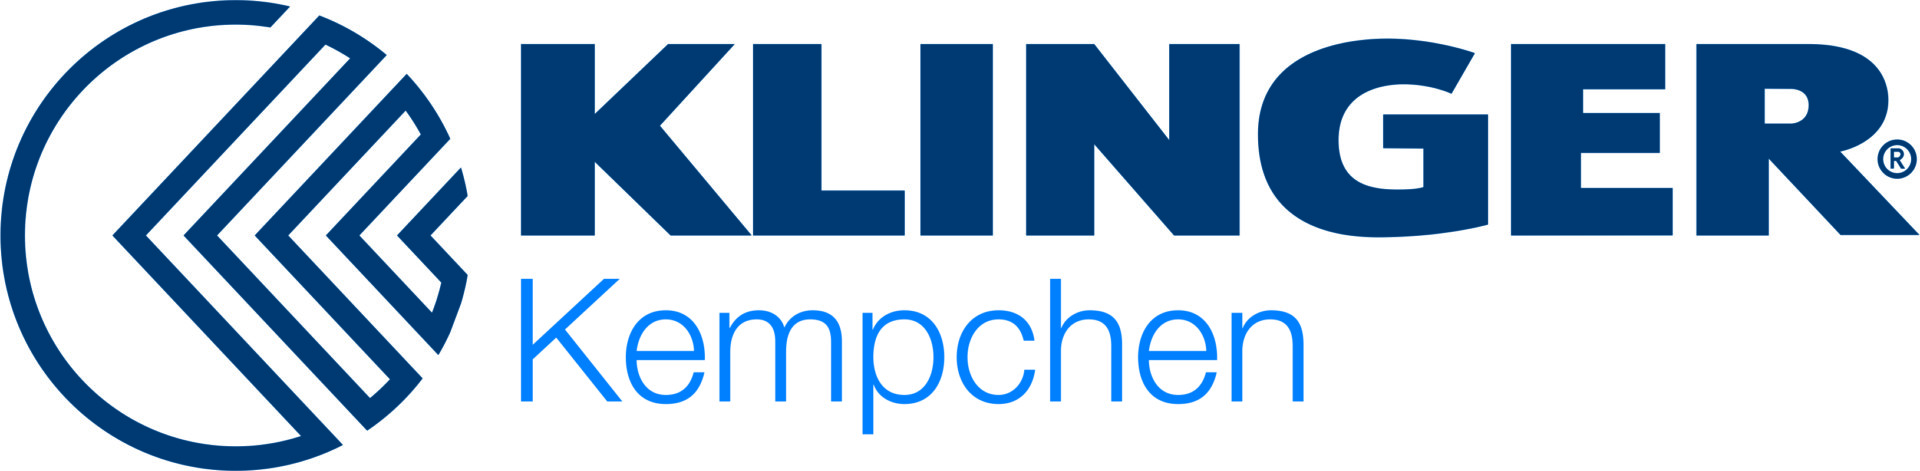 KLINGER_Kempchen_Logo_gros